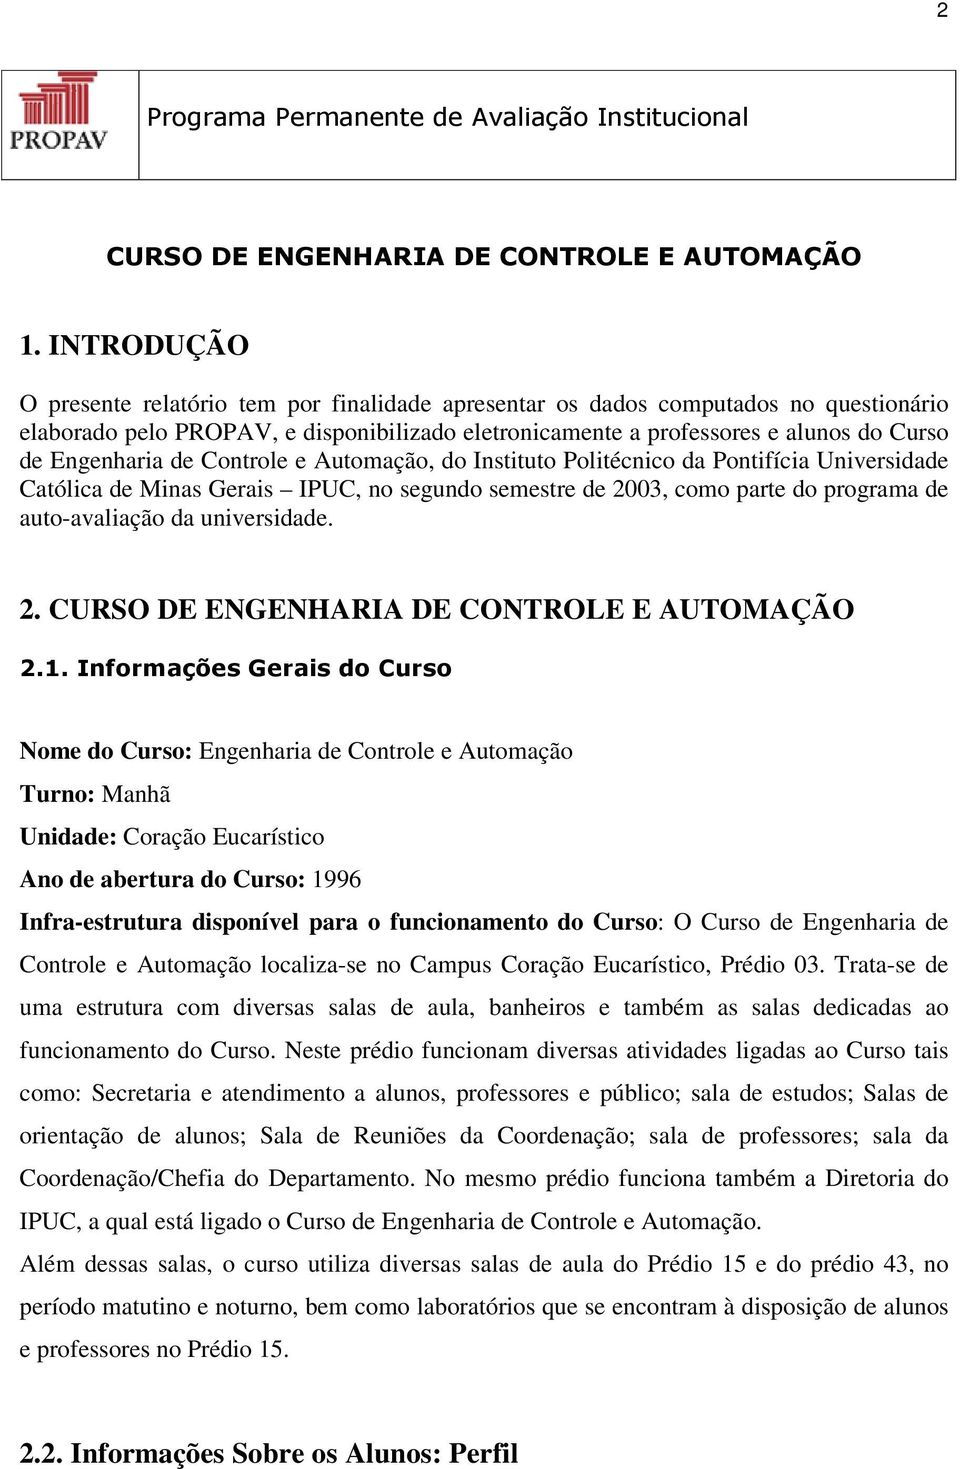 Engenharia de Controle e Automação, do Instituto Politécnico da Pontifícia Universidade Católica de Minas Gerais IPUC, no segundo semestre de 2003, como parte do programa de auto-avaliação da